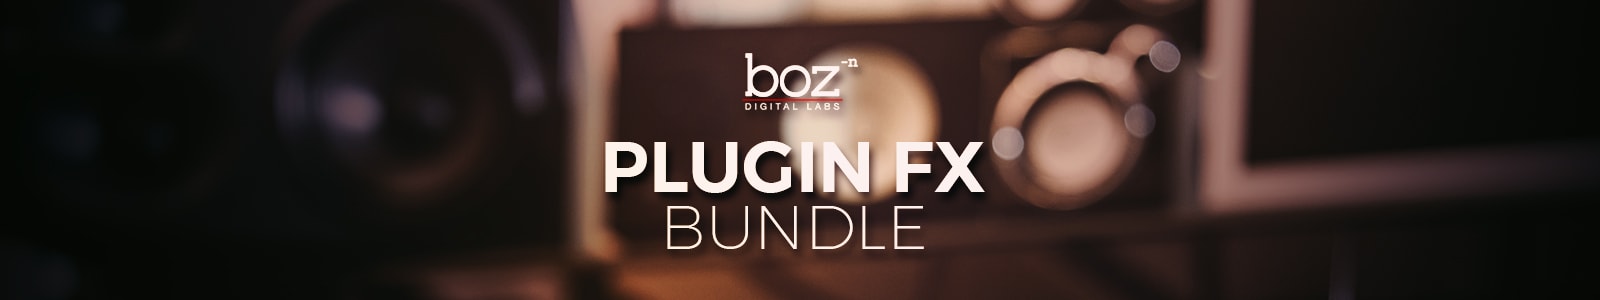 plugin fx bundle